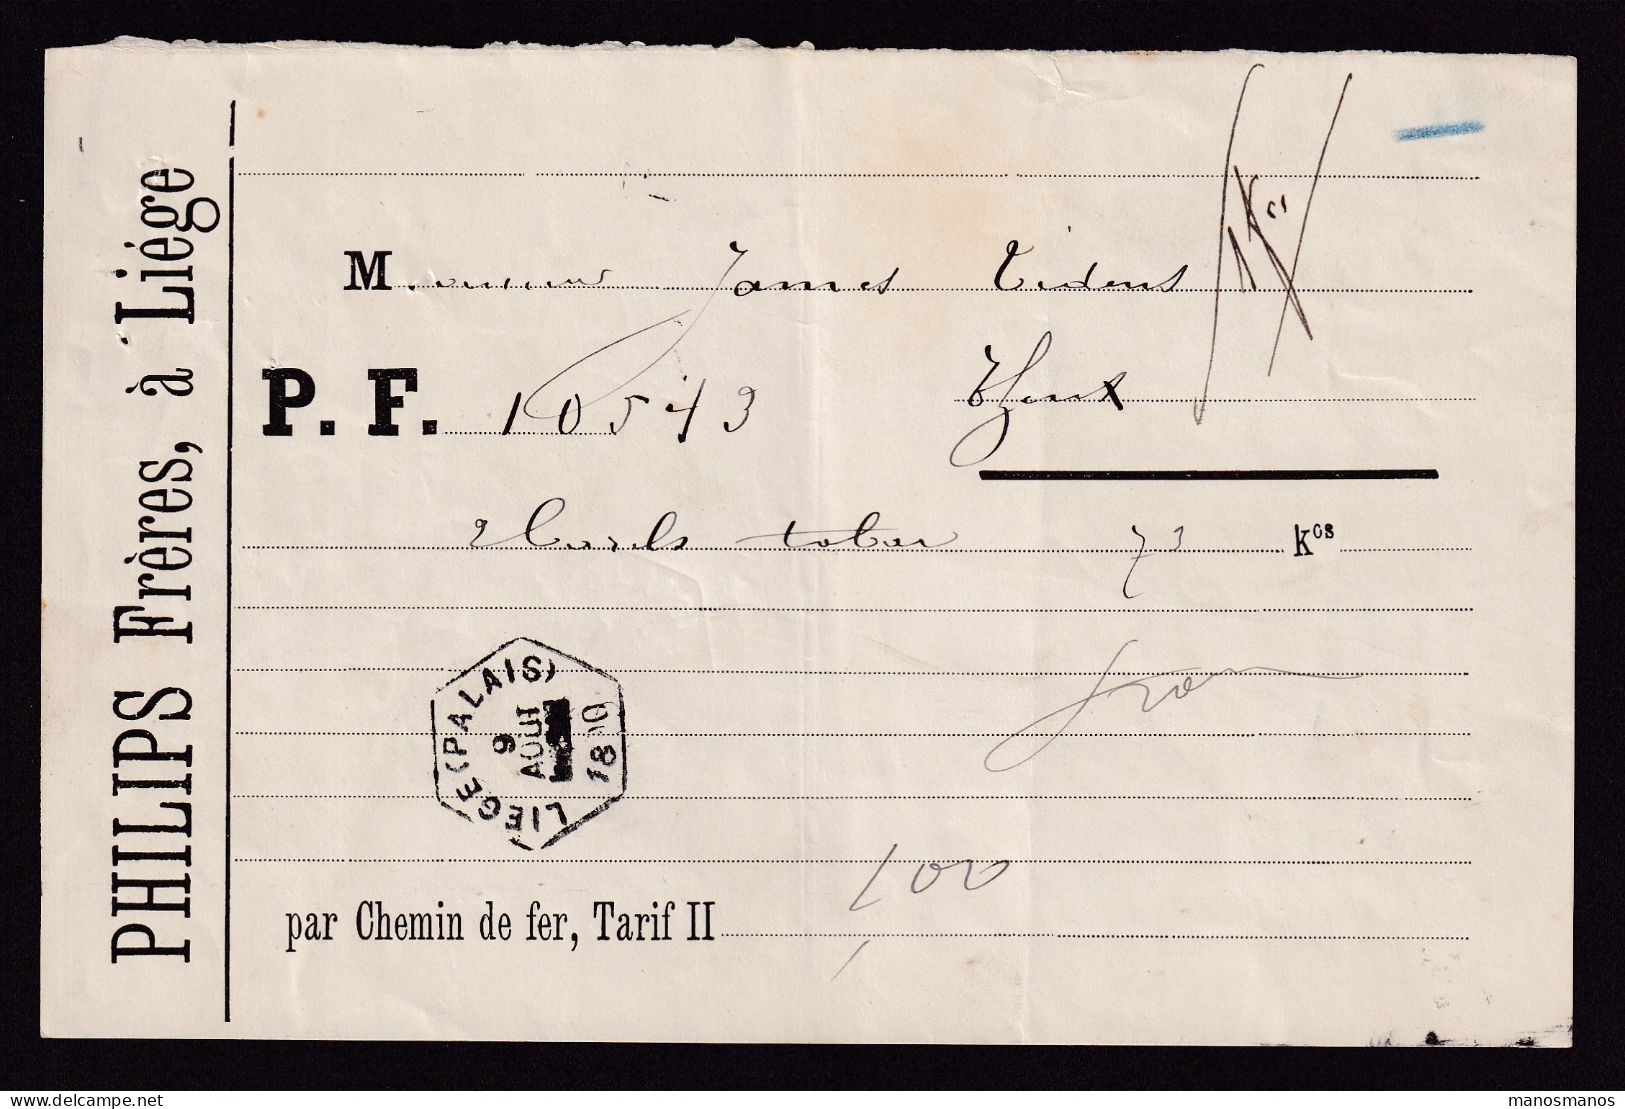 DDFF 820 -- BELGIUM - Lettre De Voiture Hexagonal Gare De LIEGE PALAIS 1890 à THEUX / Entete Philips Frères (TABAC) - Tobacco